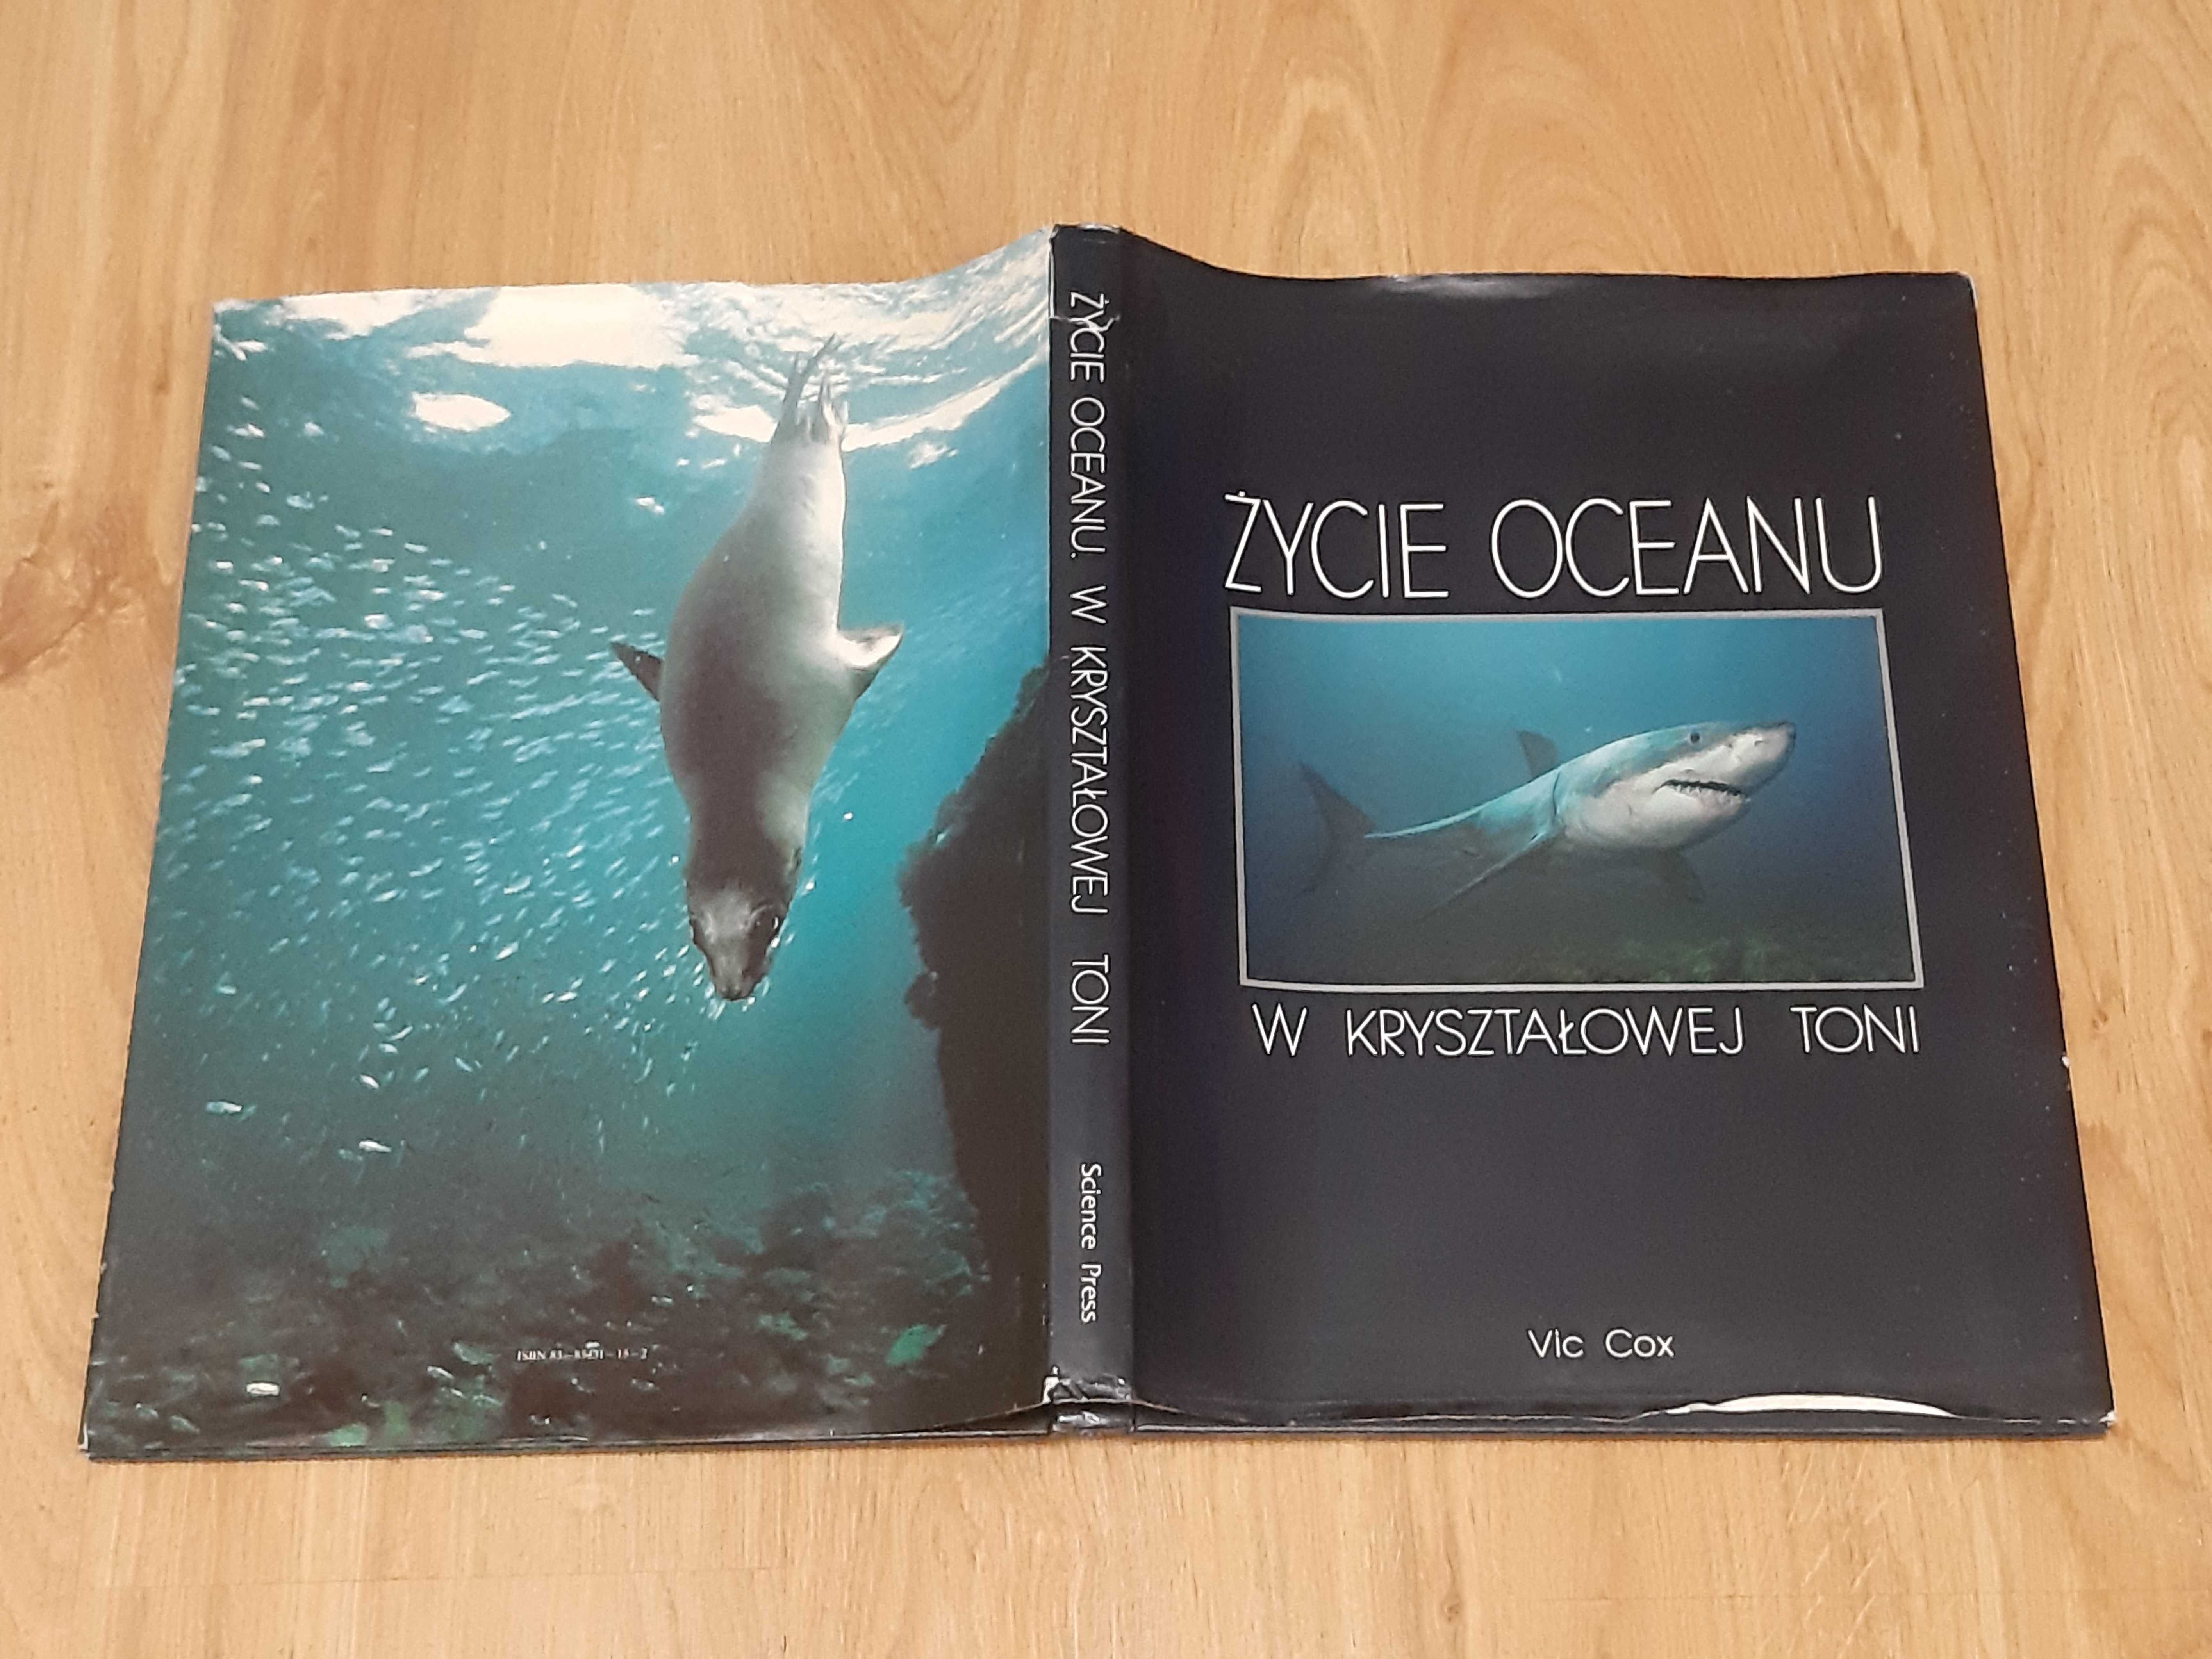 Życie oceanu W Kryształowej Toni Vic Cox album duży format